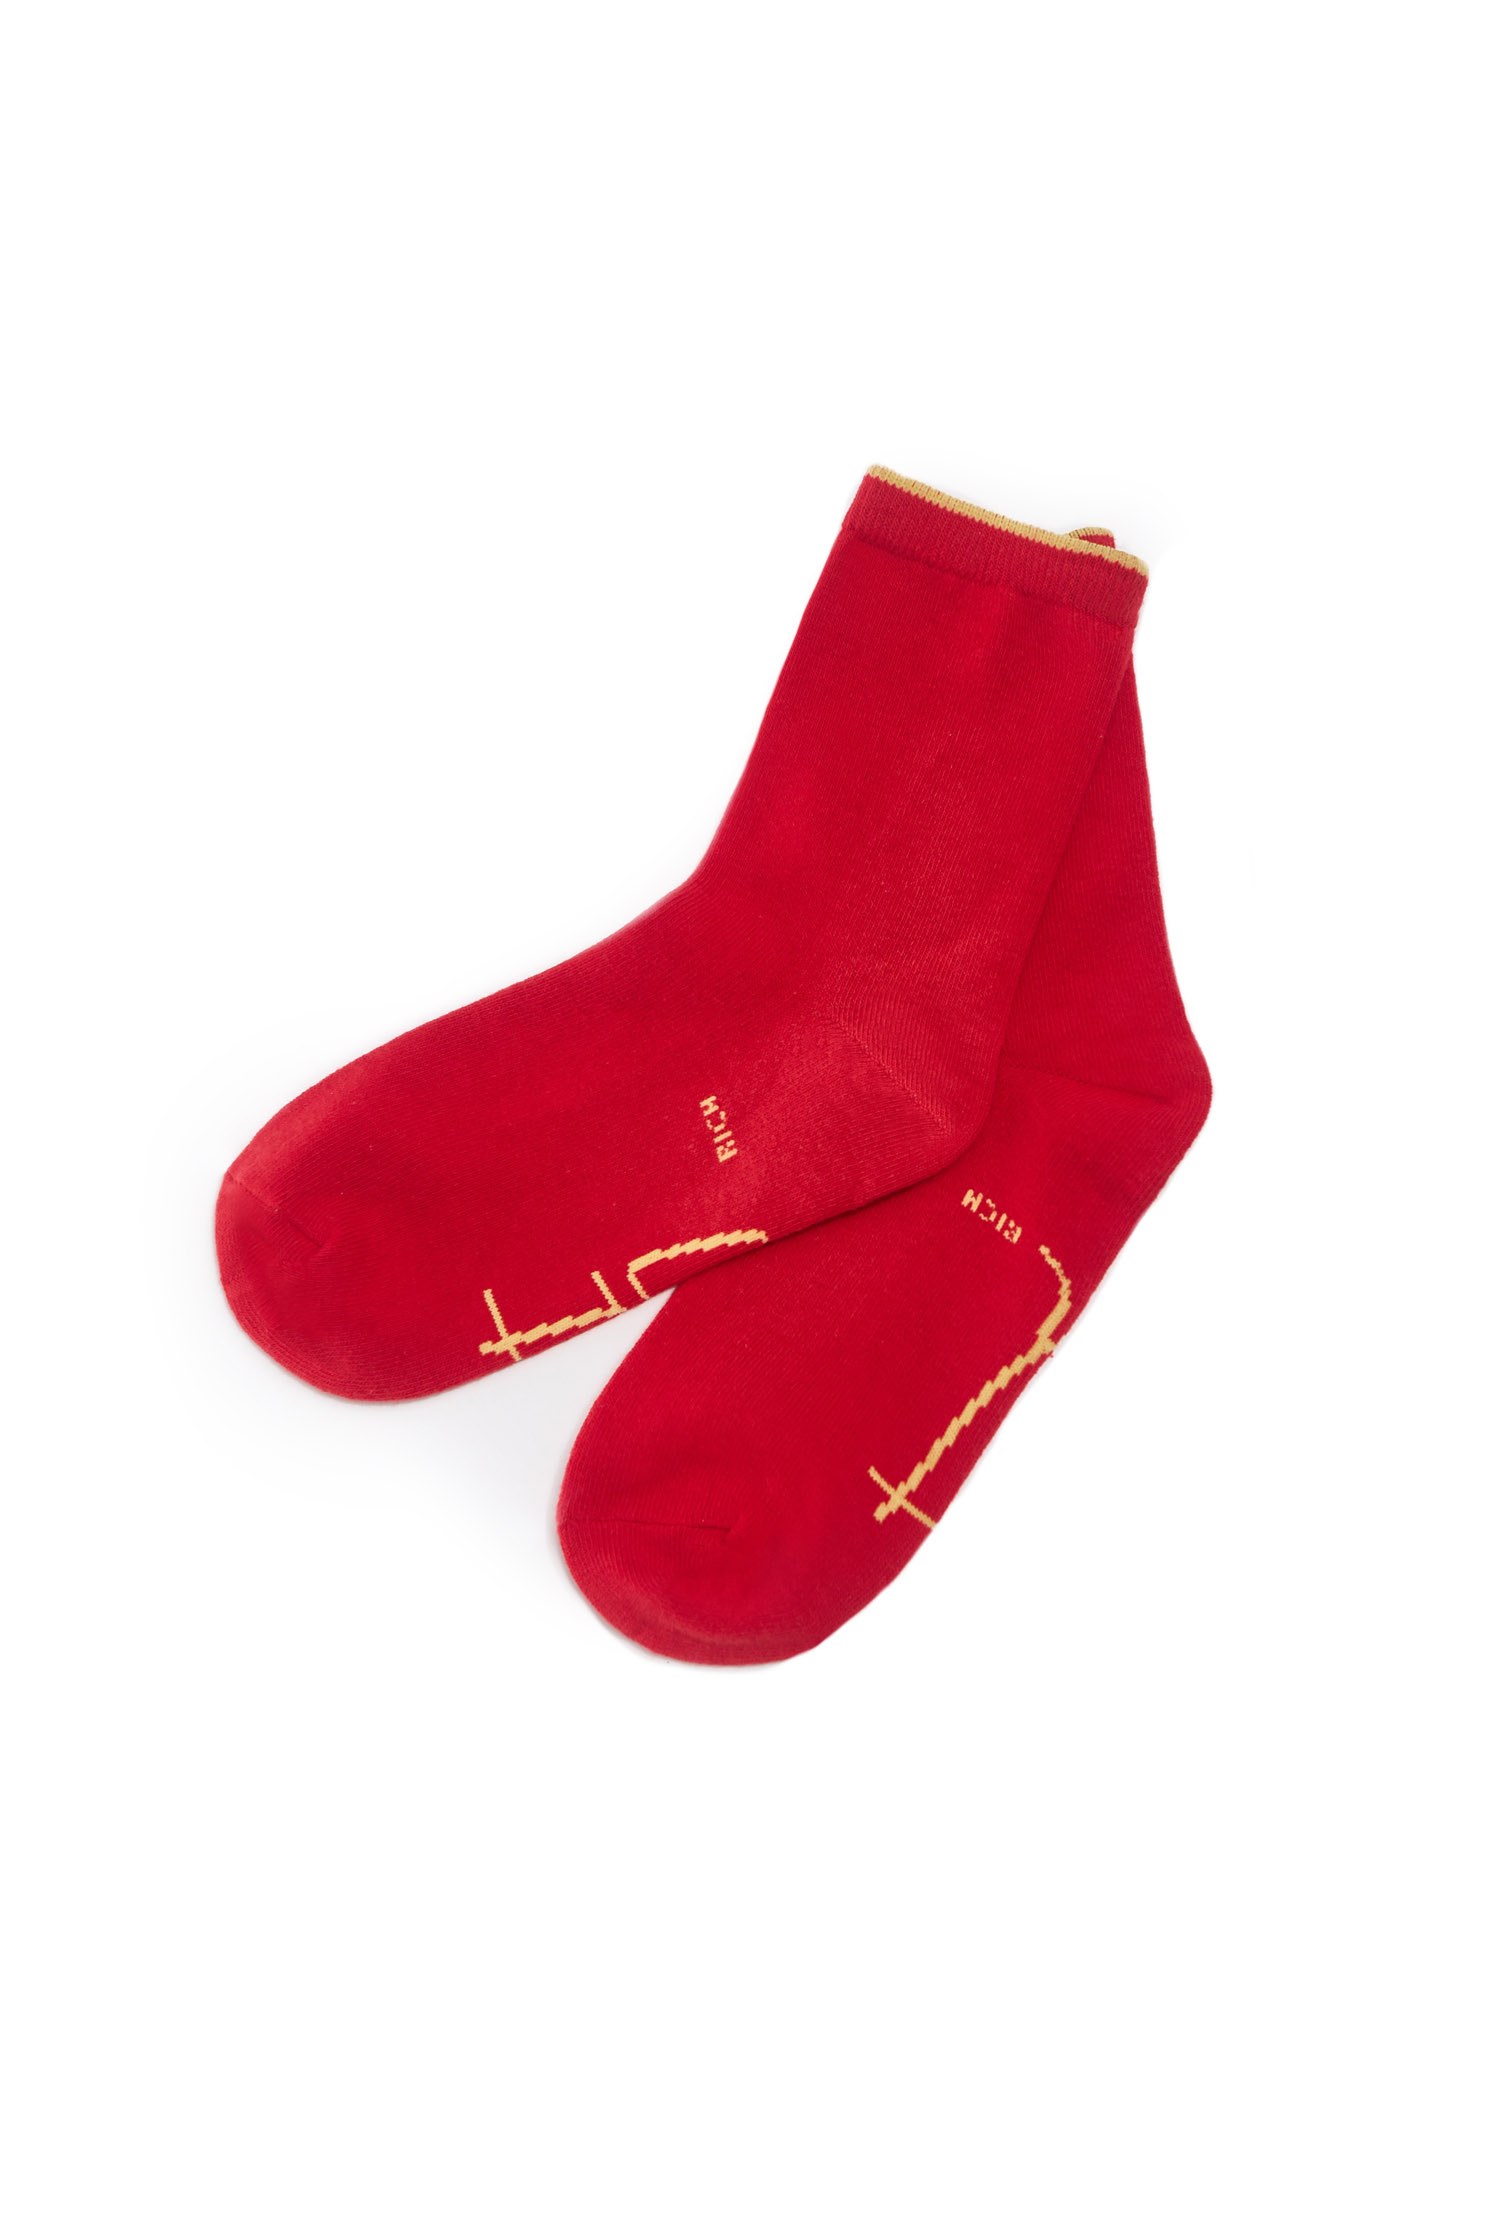 大吉襪,字母 棉,棉 紅色,字母 紅色大吉襪,新年開運特輯,秋冬穿搭,開運紅